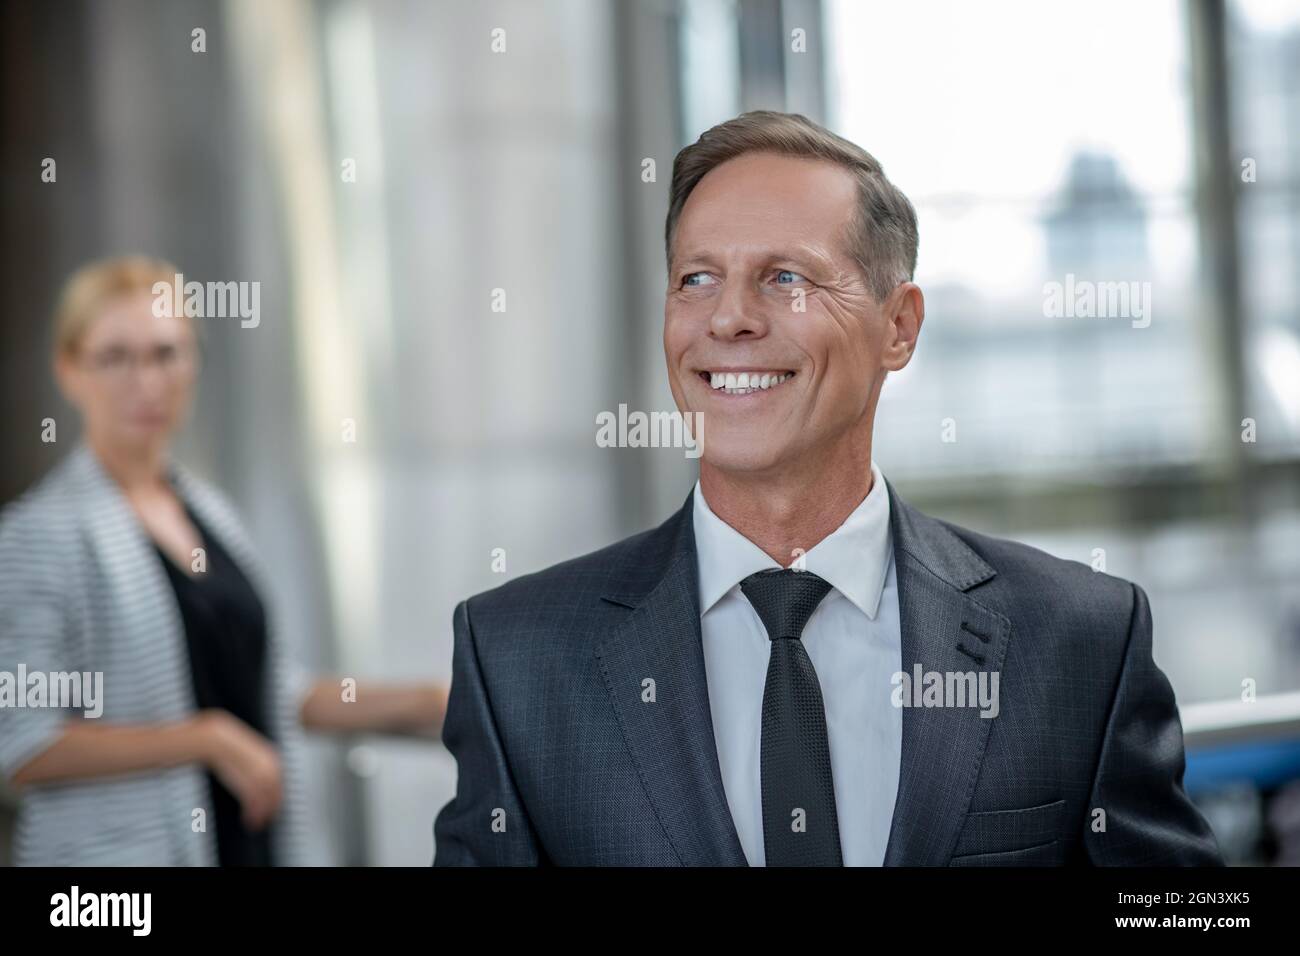 Homme adulte avec un sourire éclatant debout à l'aéroport Banque D'Images